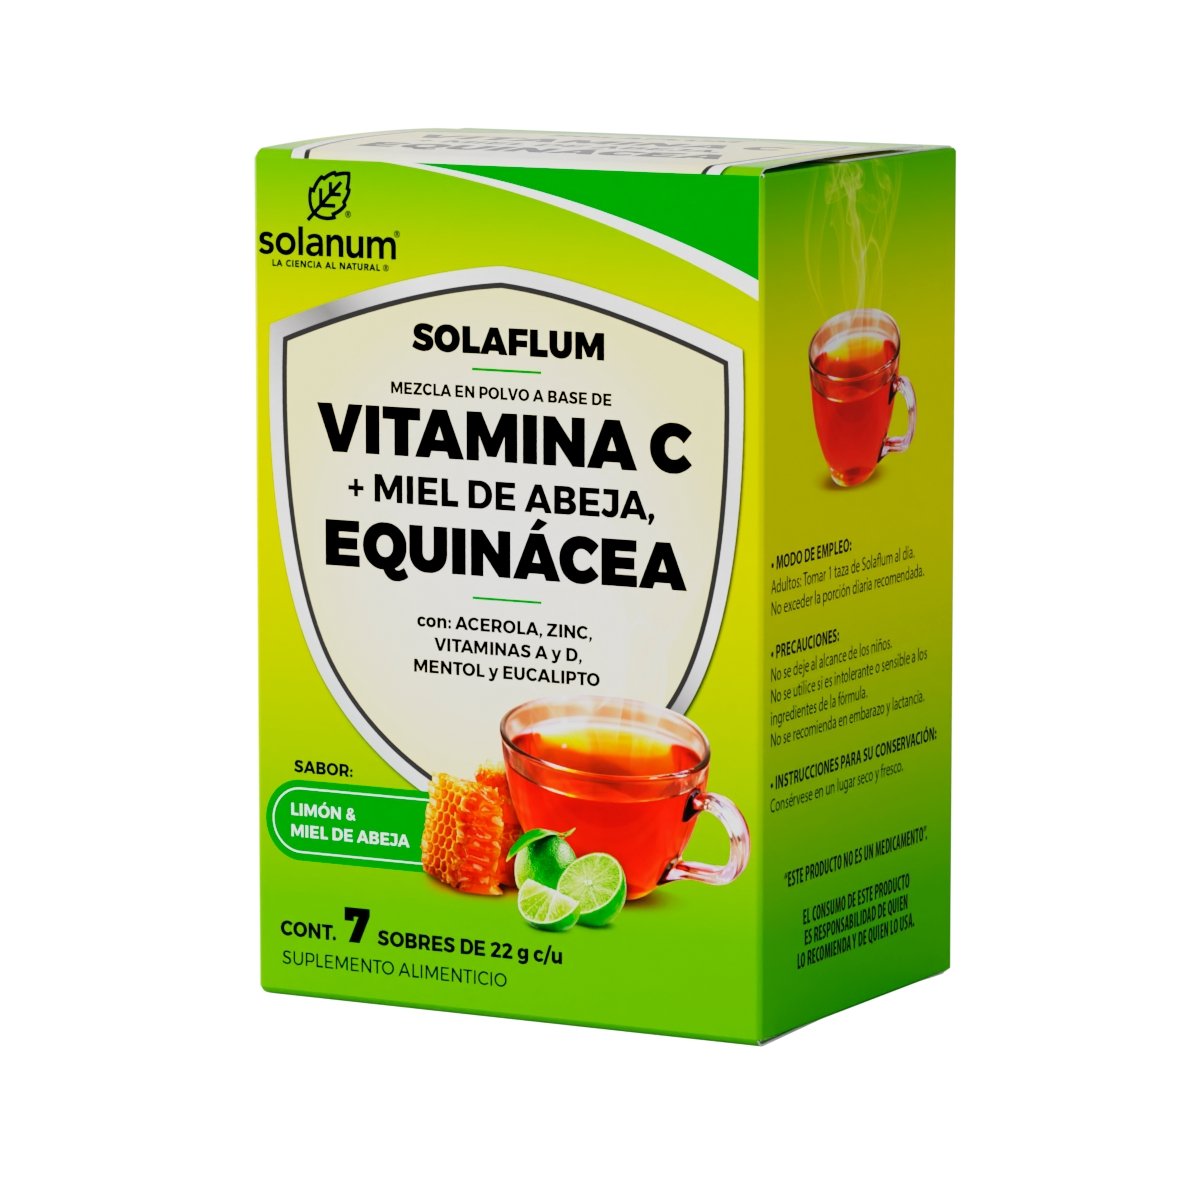 Vitamina C + Equinácea Polvo